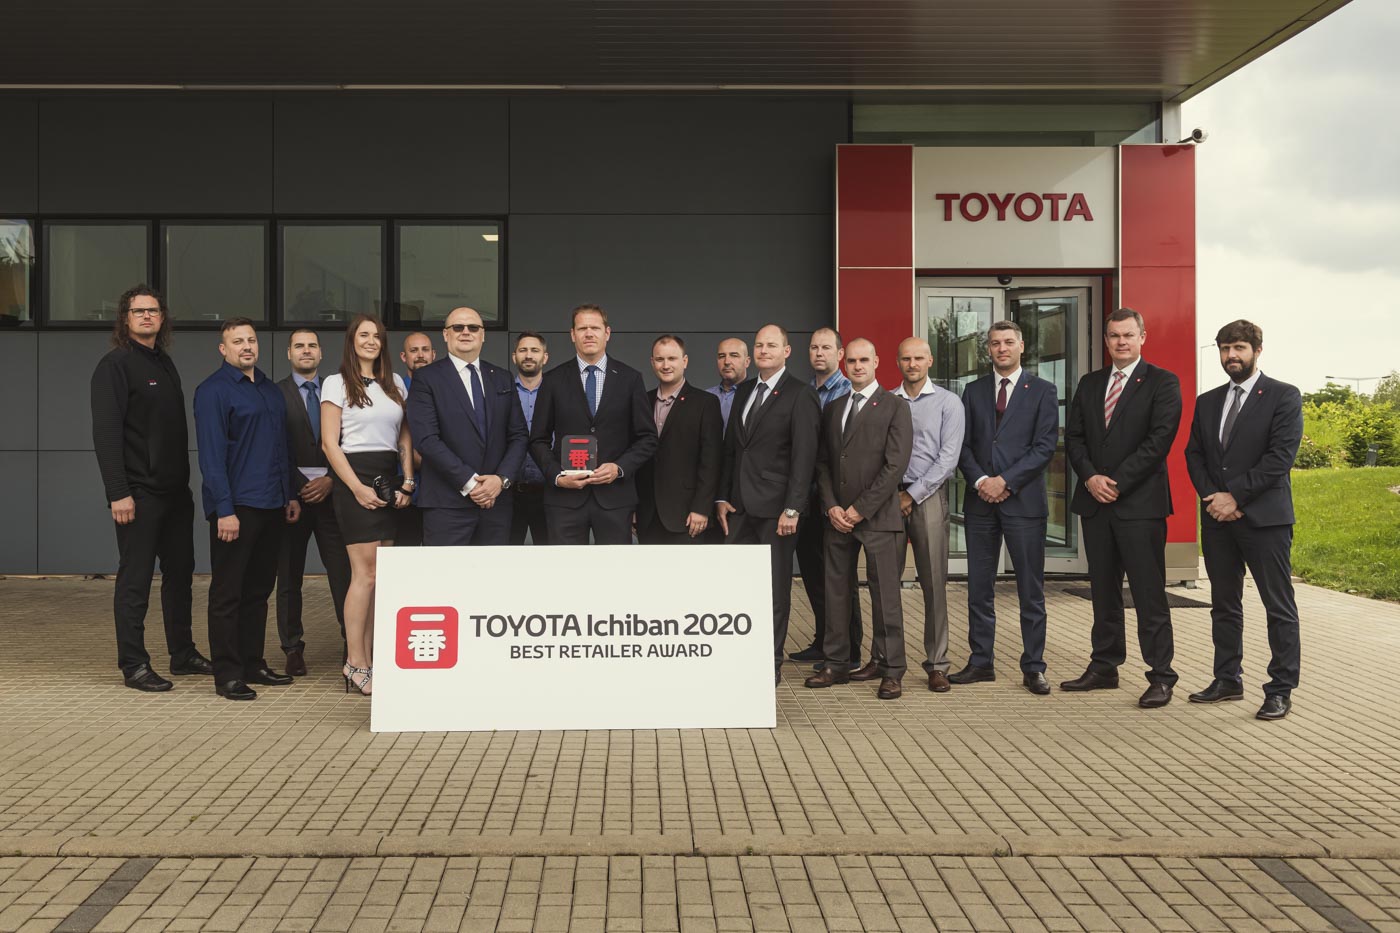  Nejlepším prodejcem značky Toyota v Česku podle doporučení zákazníků je pro rok 2020 společnost Dolák České Budějovice